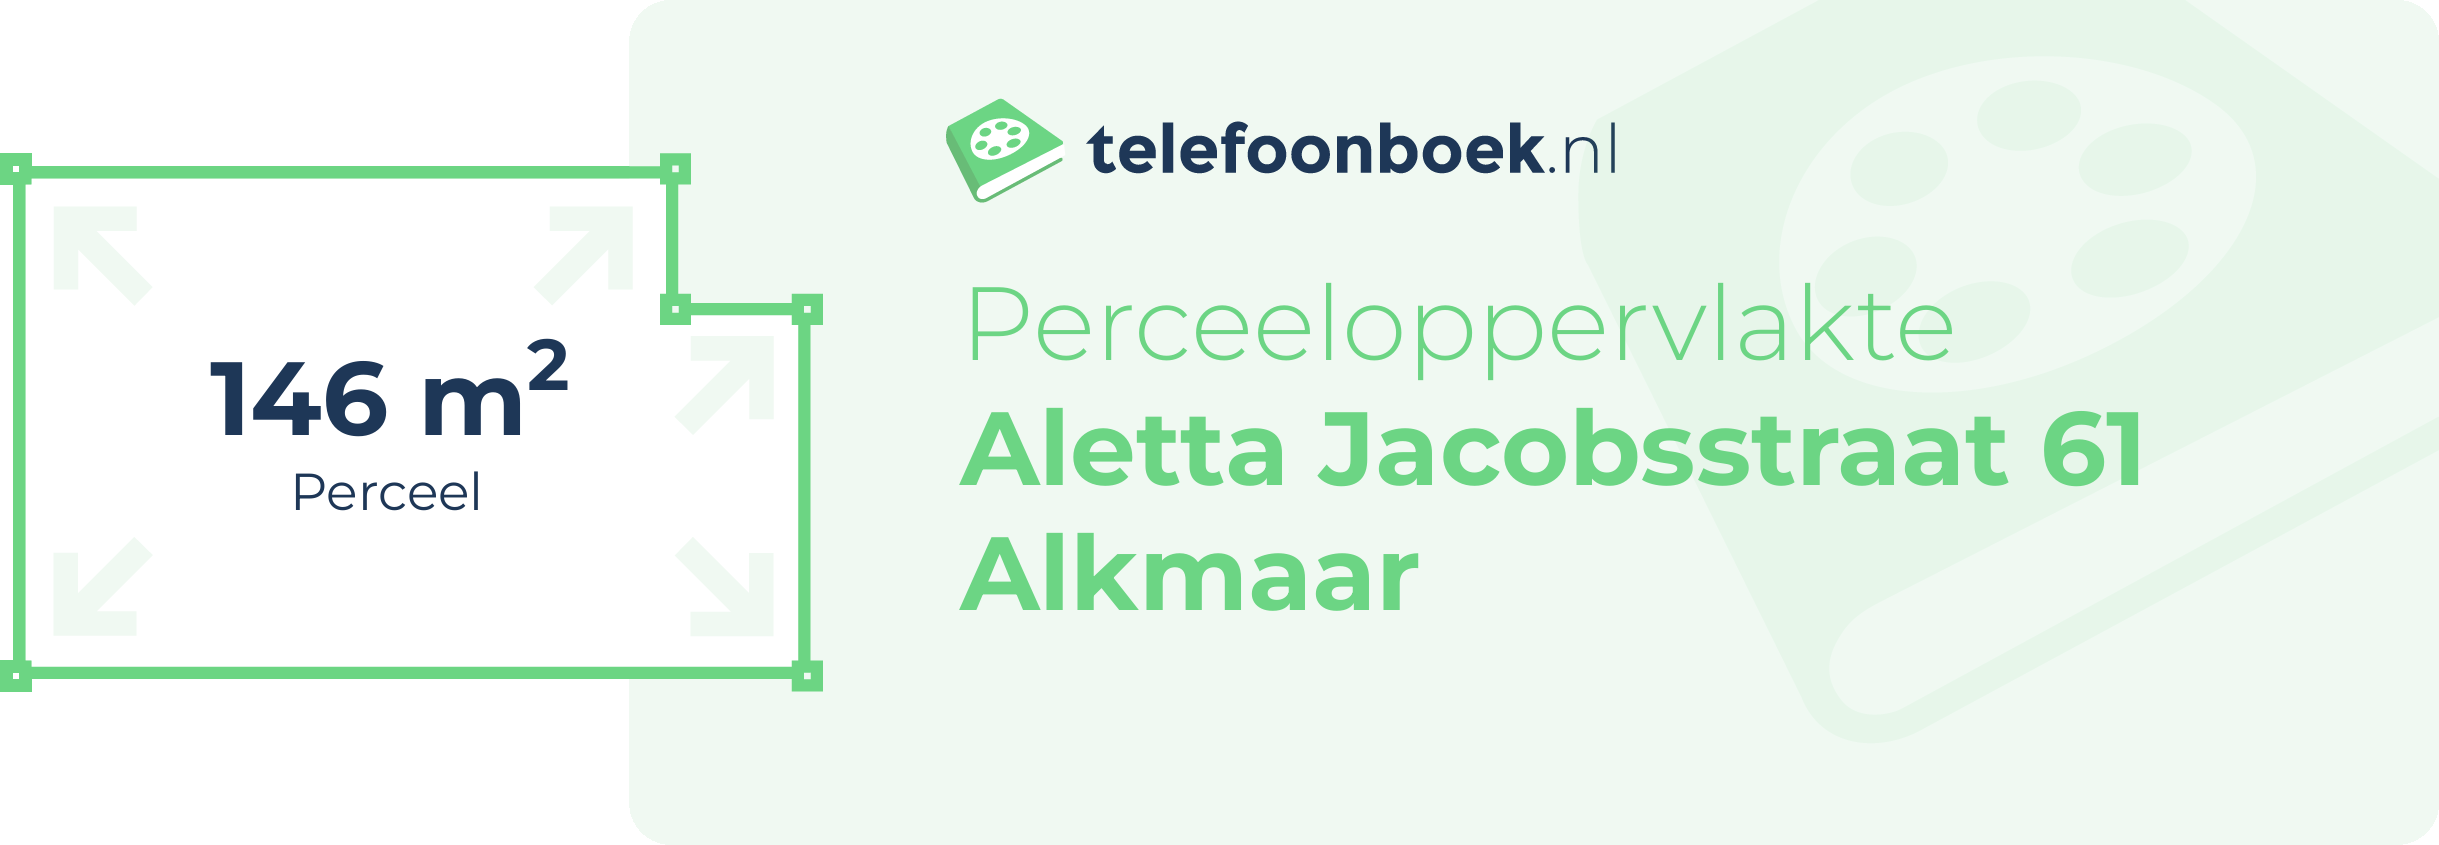 Perceeloppervlakte Aletta Jacobsstraat 61 Alkmaar